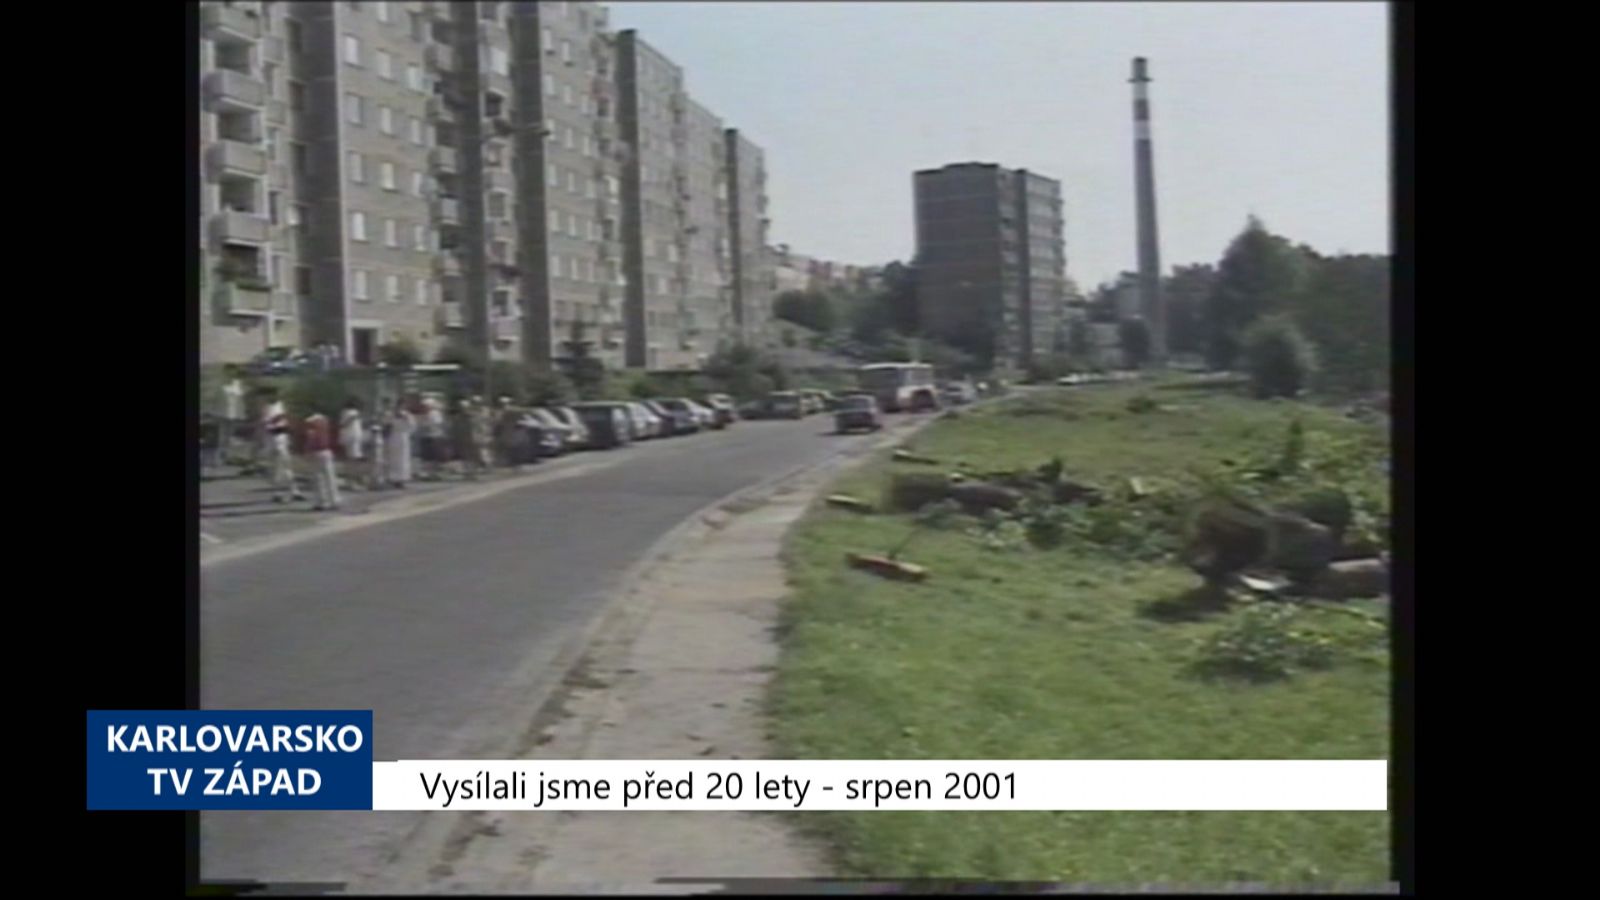 2001 – Cheb: Obyvatelé sídliště protestují proti kácení stromů (TV Západ)